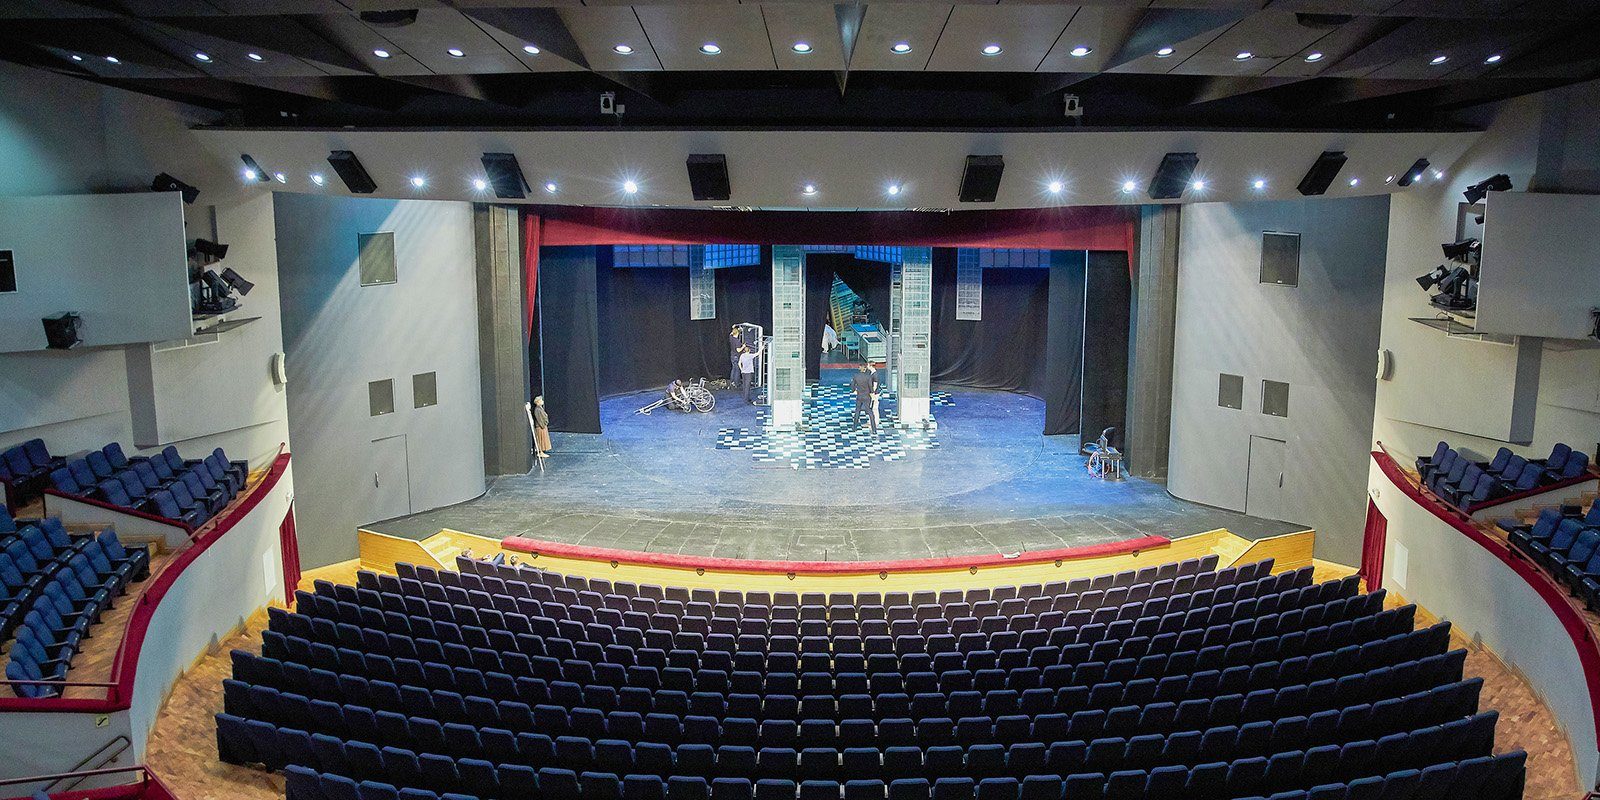 Театр сатиры расположение мест в зале фото